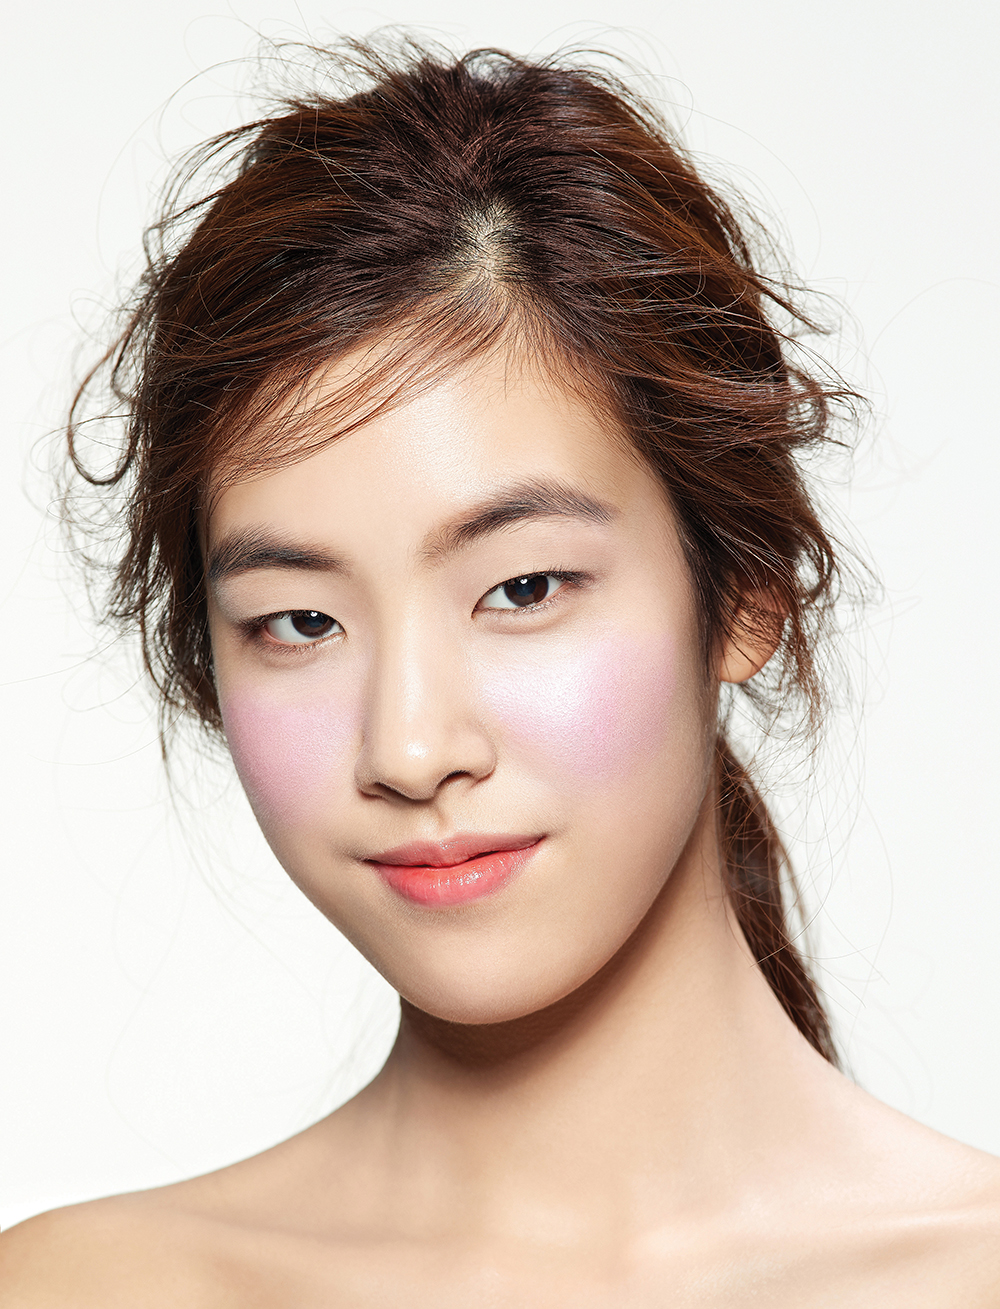 긴 얼굴형에 어울리는 블러셔 사용법 | 얼루어 코리아 (Allure Korea)